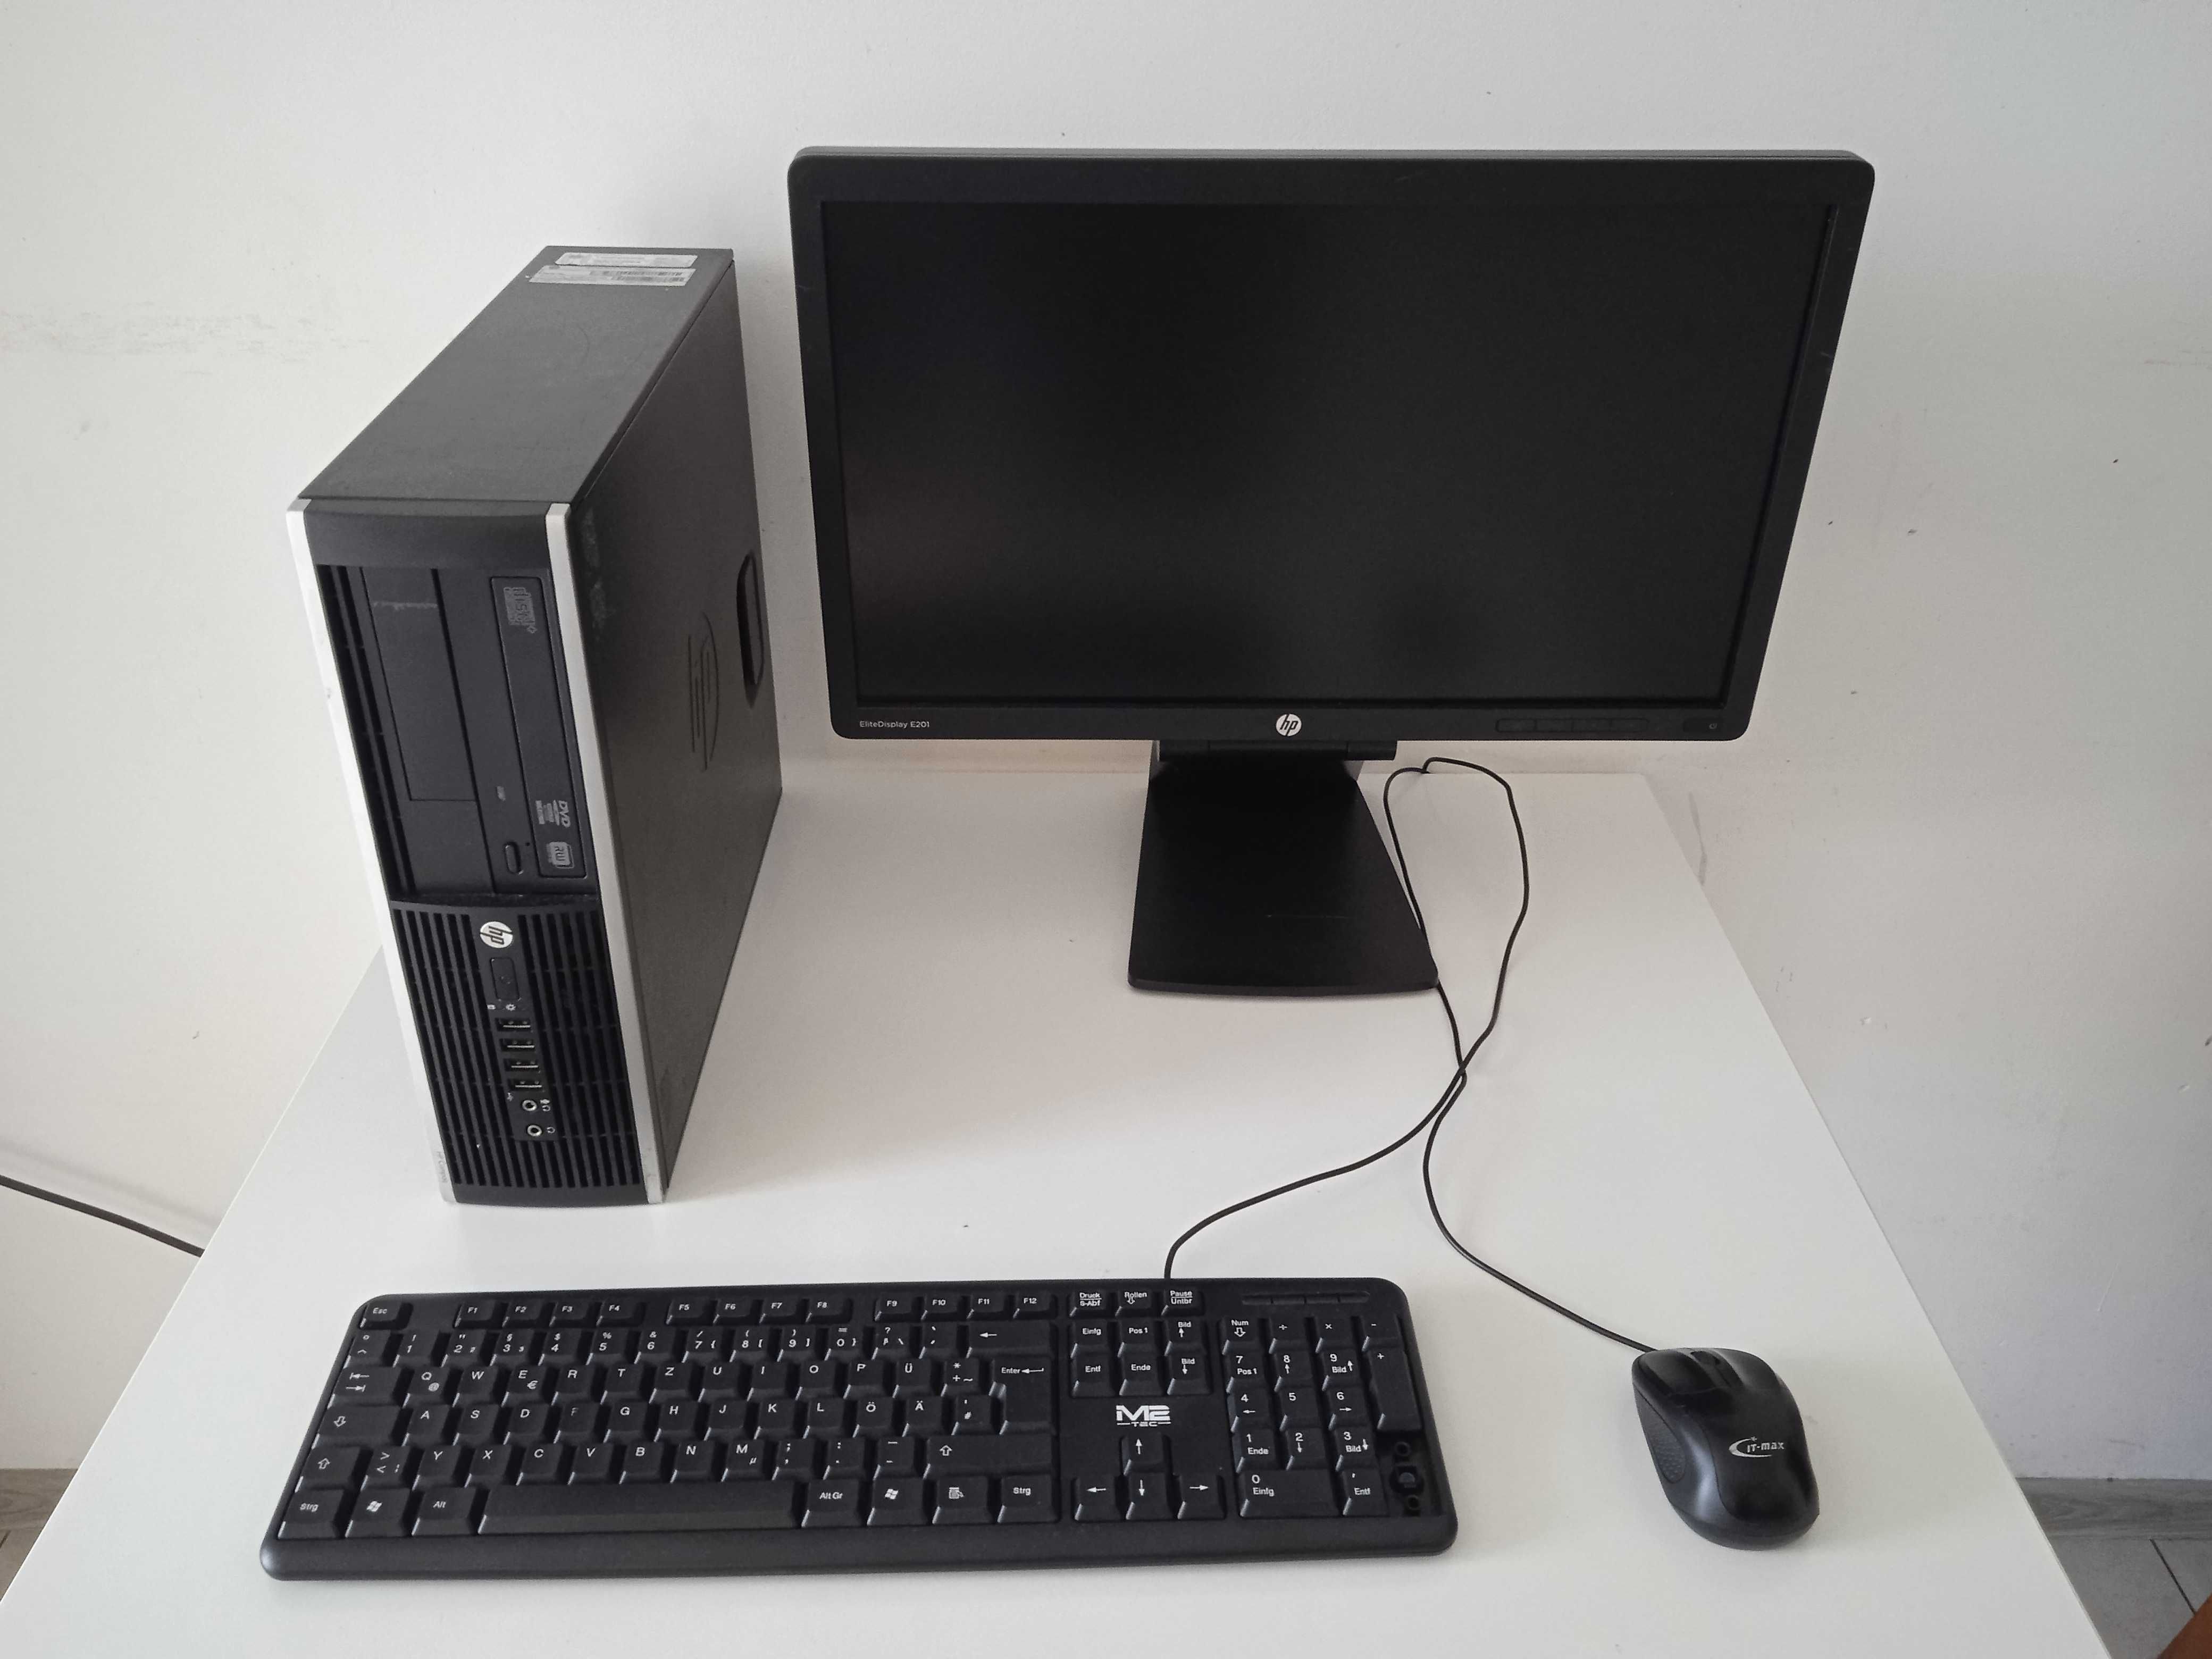 Zestaw komputer HP Compaq 6200 z monitorem, klawiaturą, i myszką